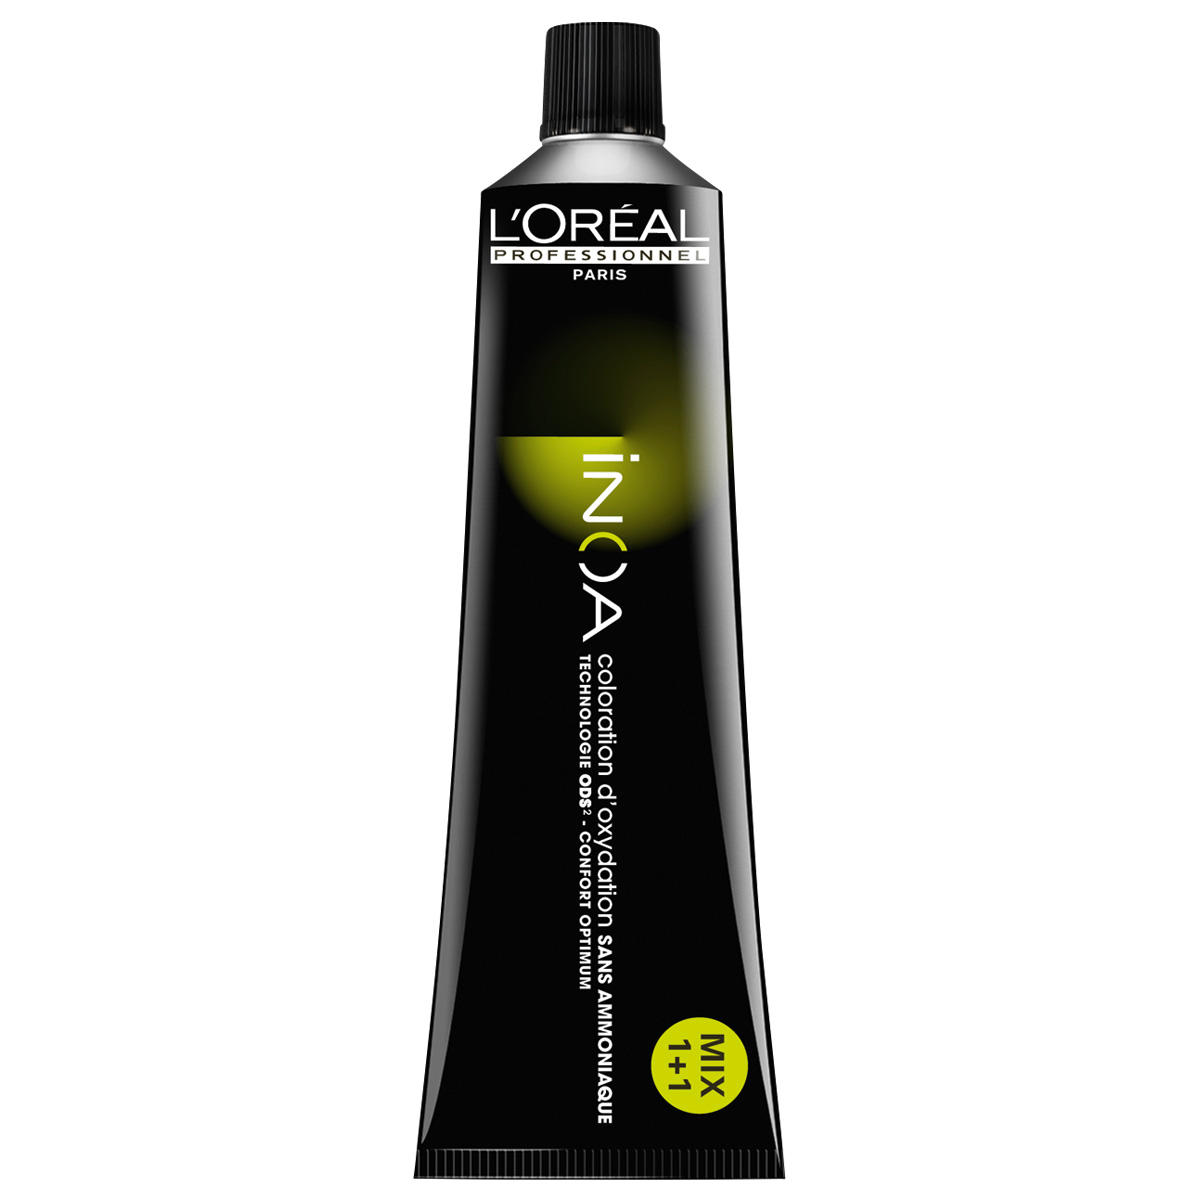 L'Oréal Professionnel Paris Coloration 9.0 Zeer Licht Blond Intensief, Tube 60 ml